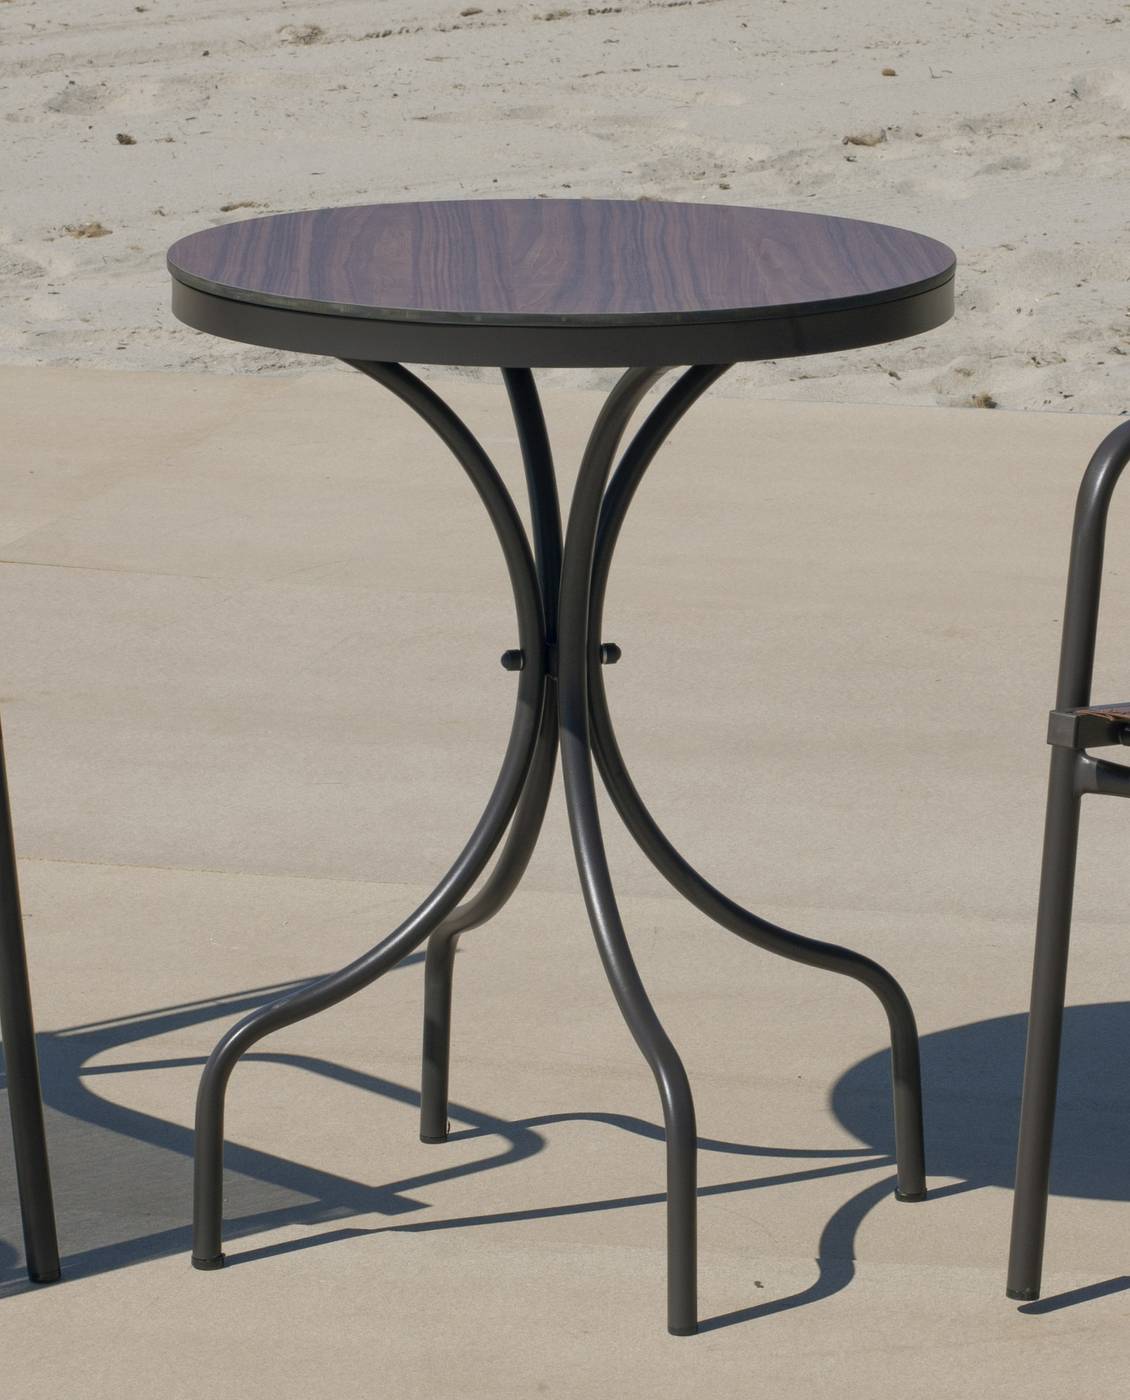 Set Dubay-60-2 Marsel - Conjunto aluminio color marrón: Mesa redonda con tablero HPL de 60 cm + 2 sillones con cojines.